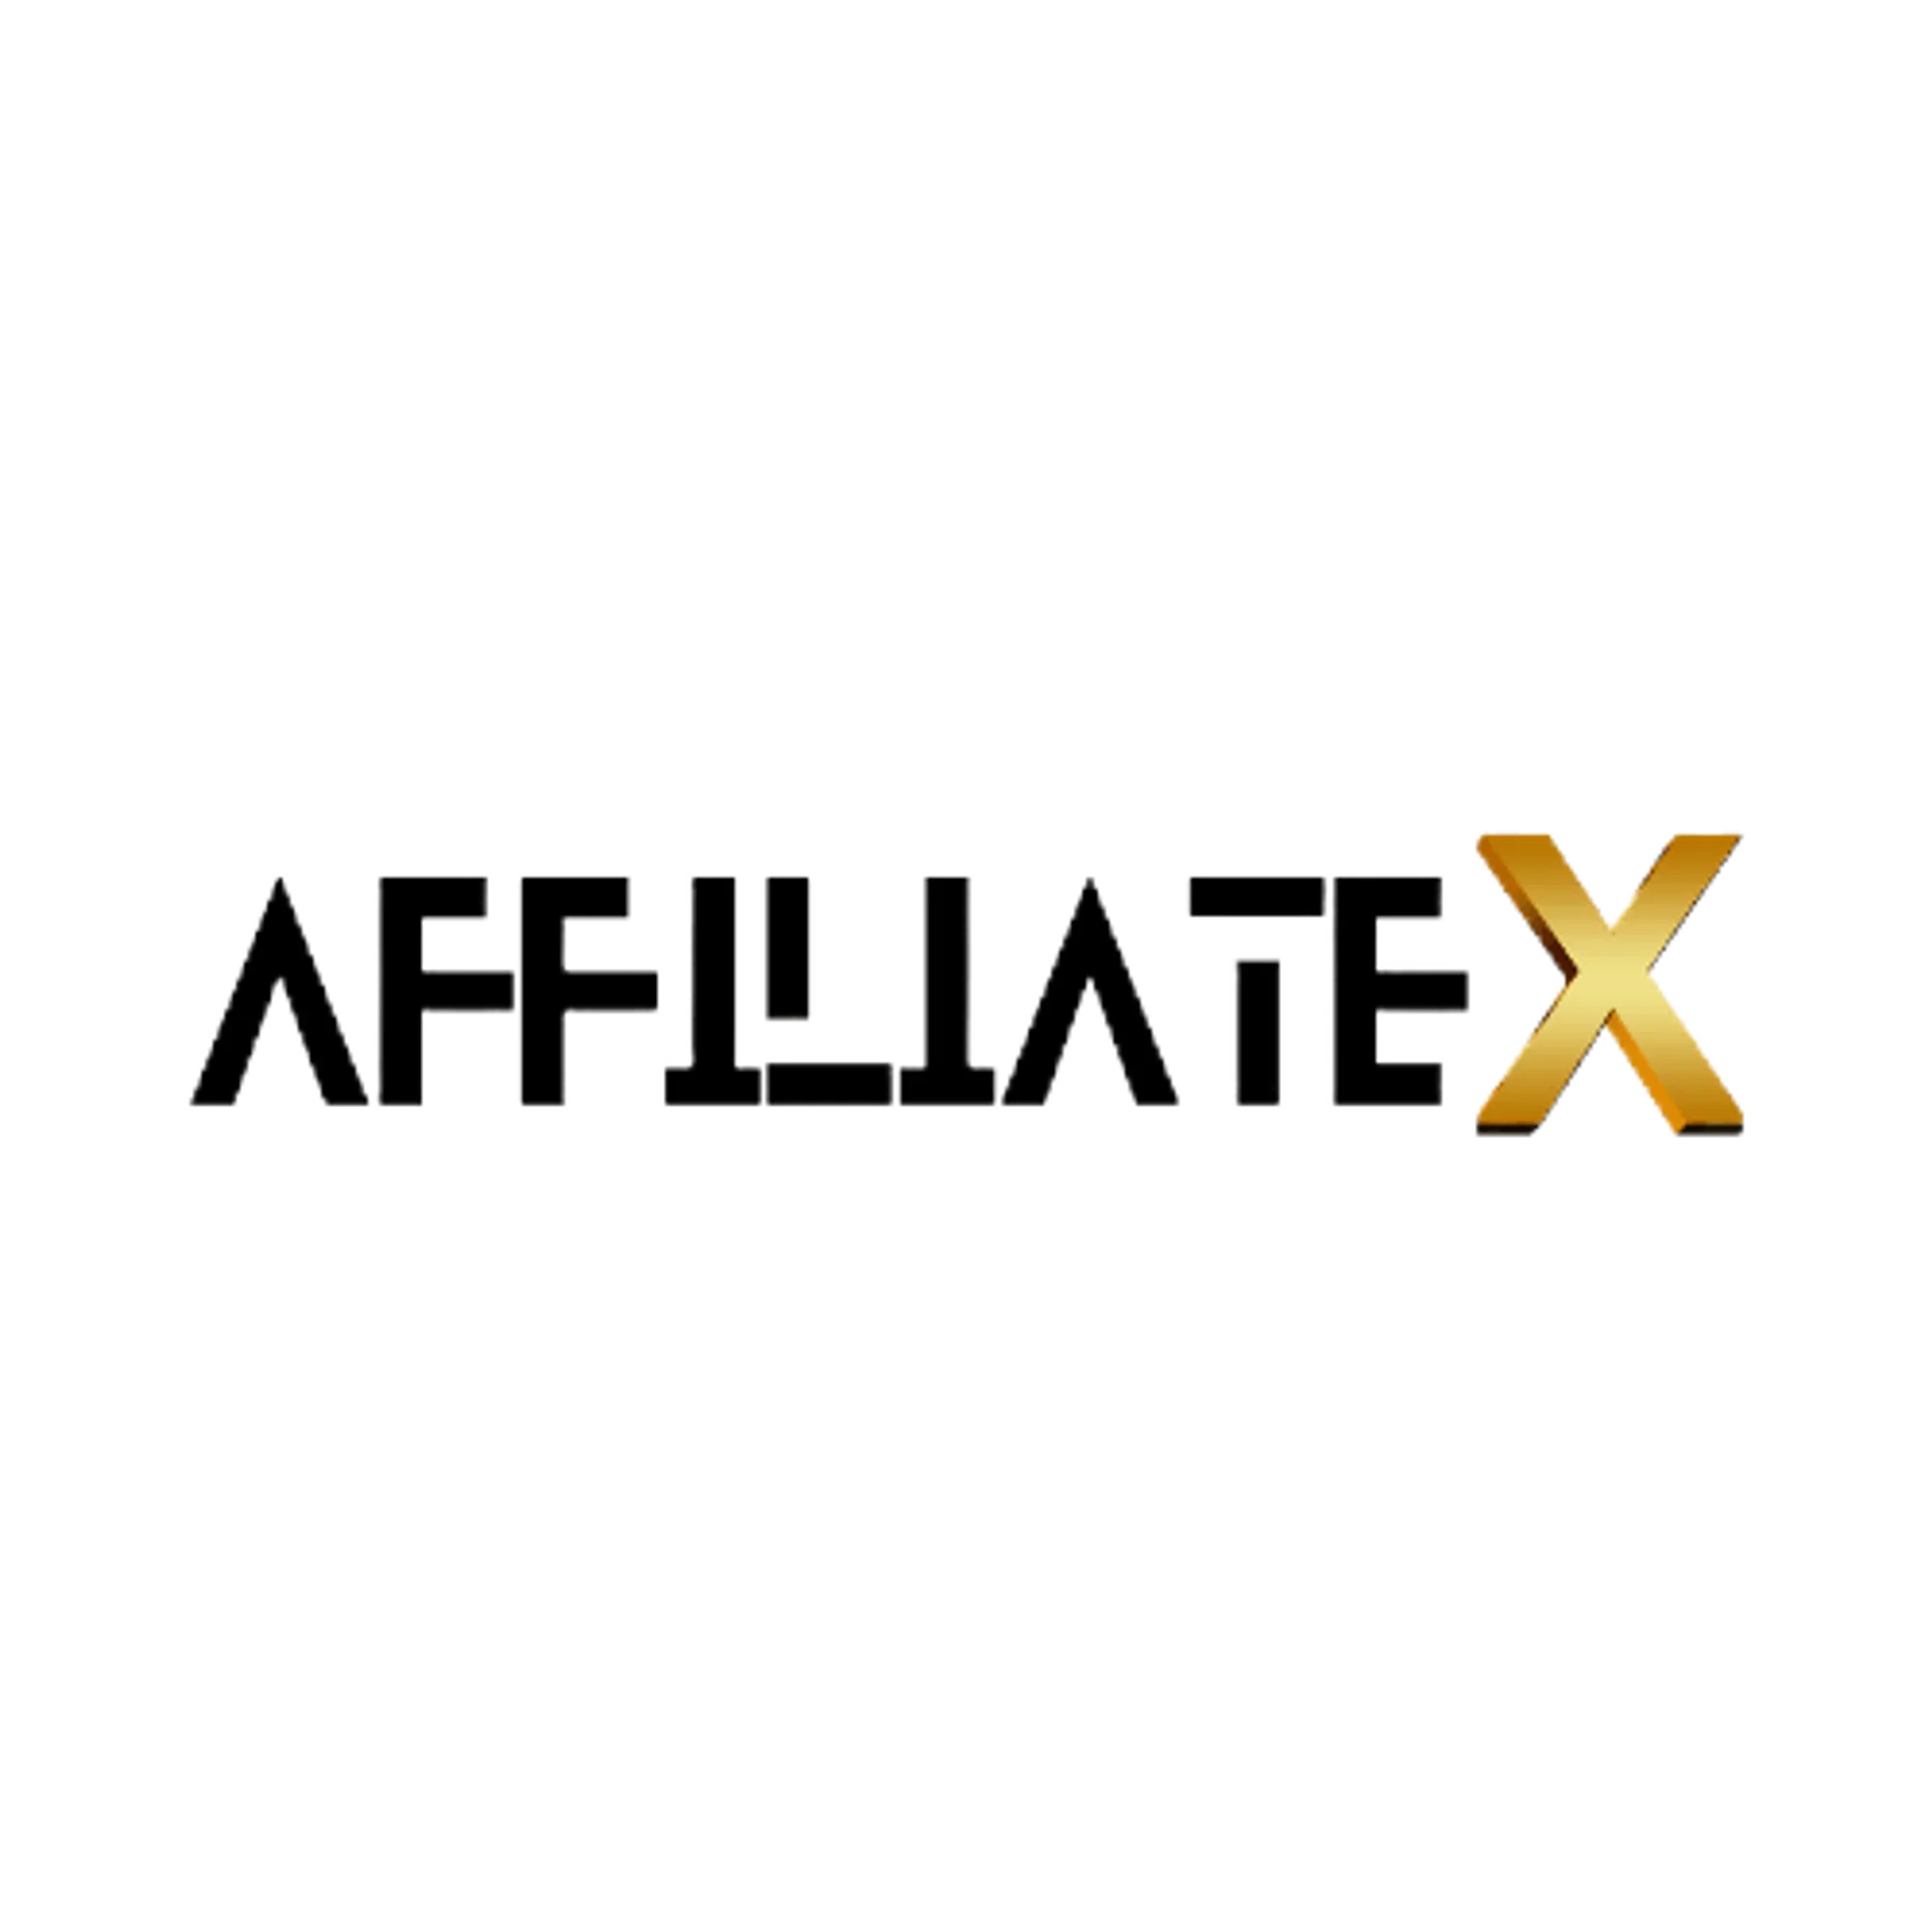 Affiliatex Promo Codes & Coupons